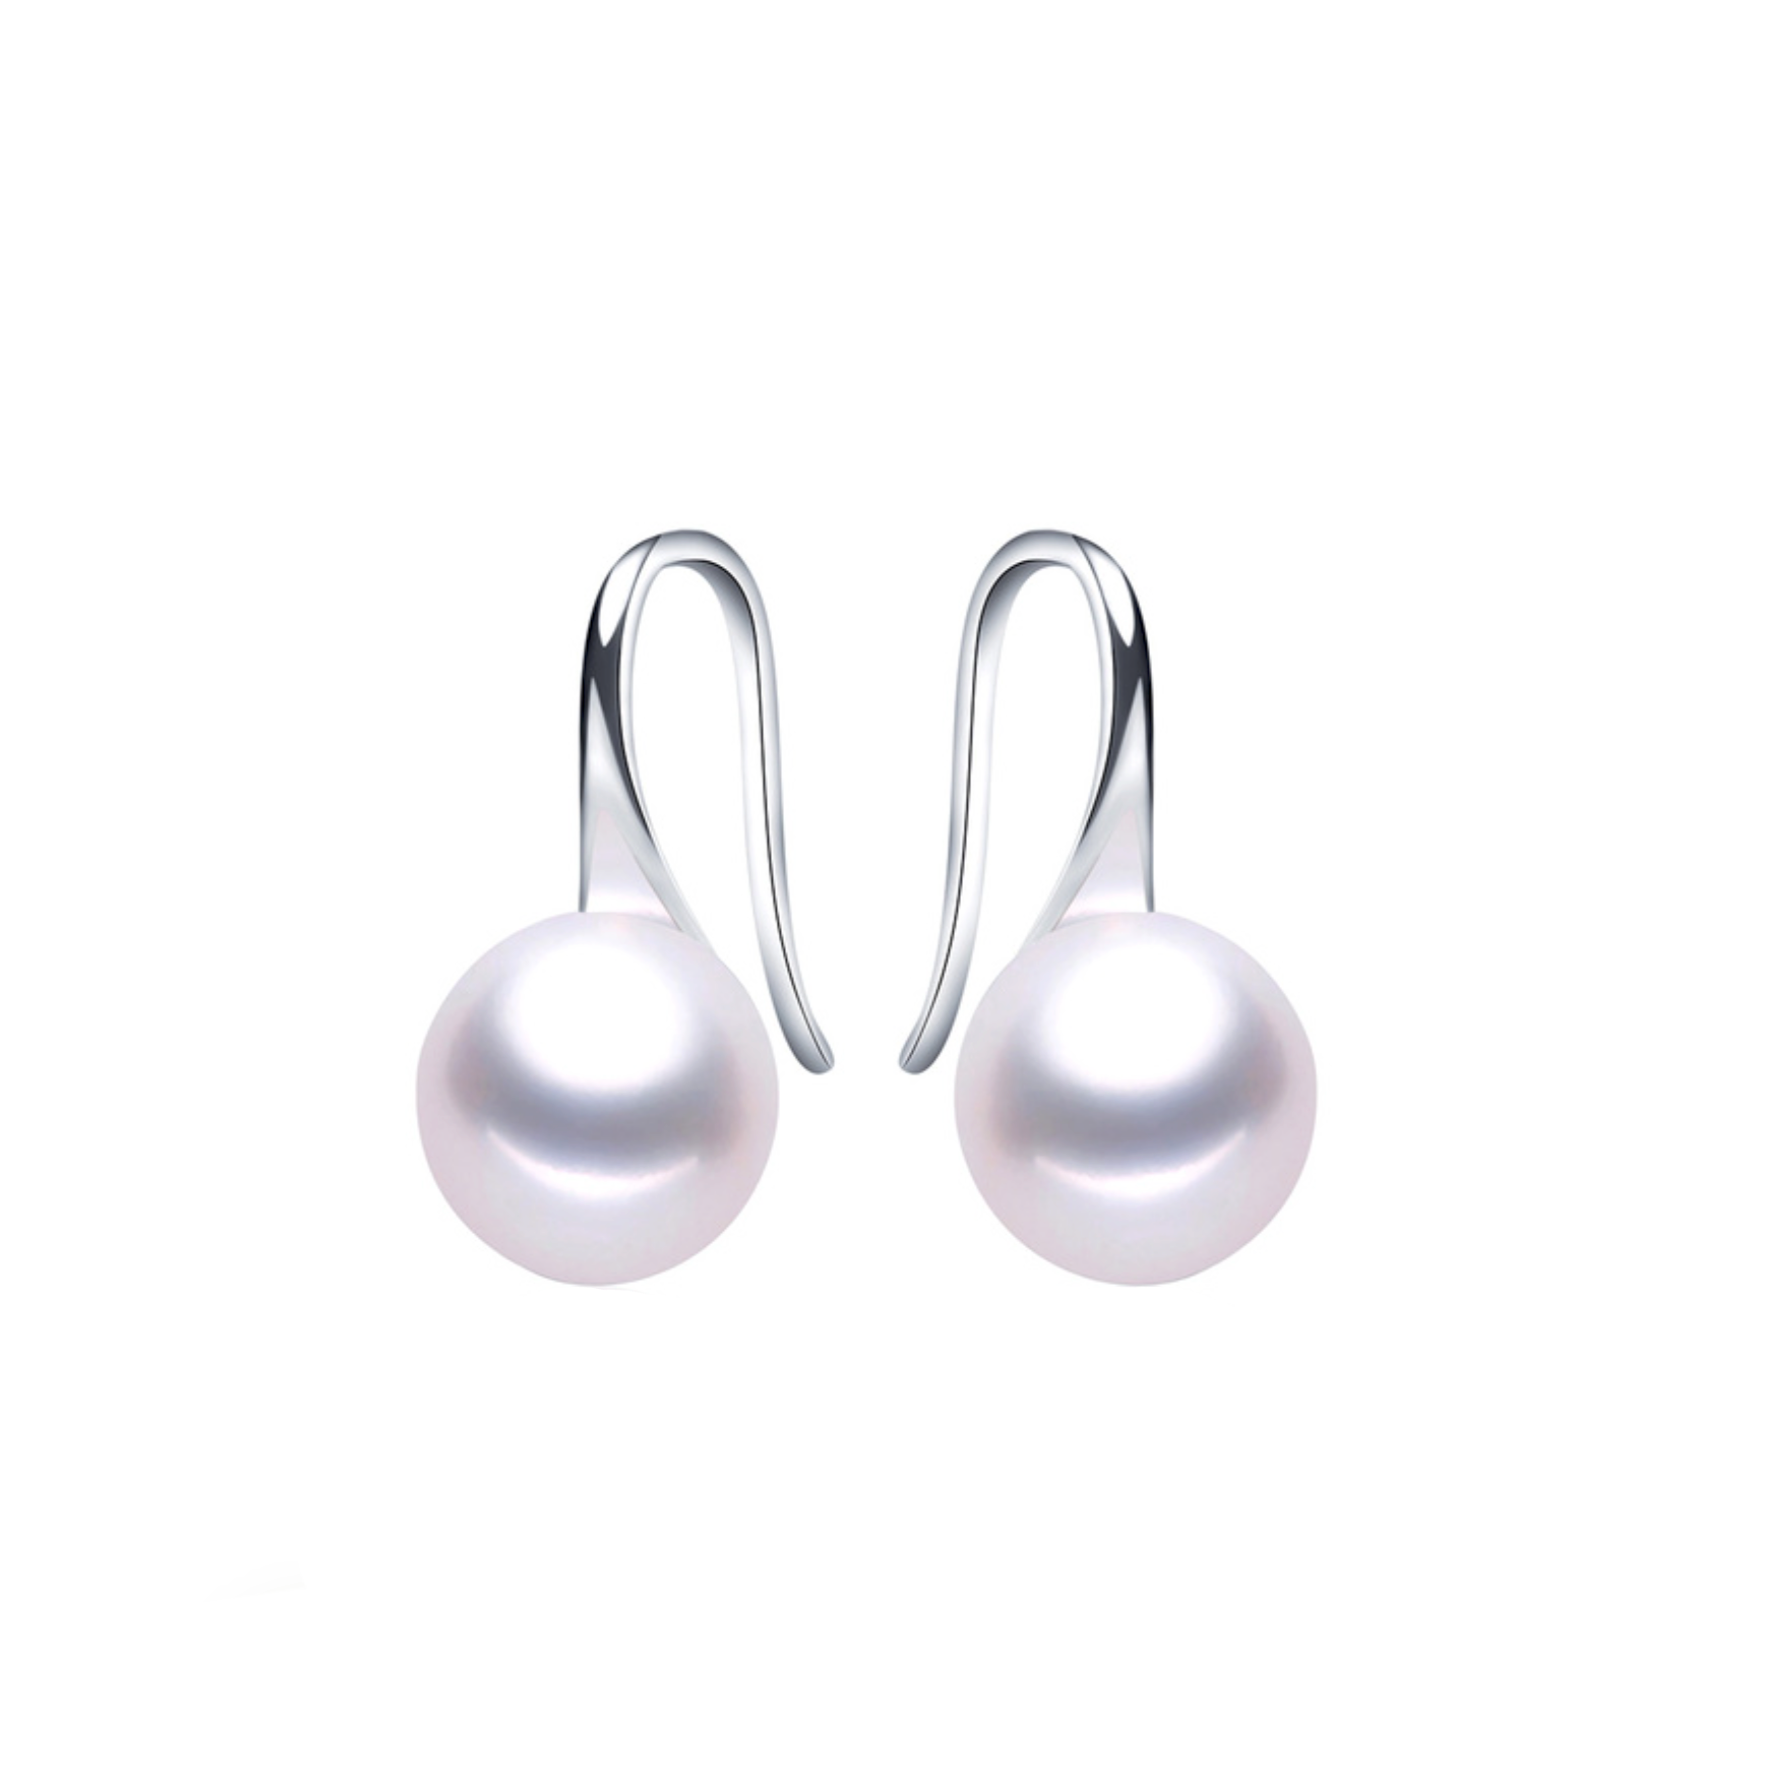 Boucles d'oreilles pendantes argent perle nacrée 1 cm. Détails produit : Couleur argent. Métal argenté. Petits perles blanches nacrées de 1 cm de diamètre.